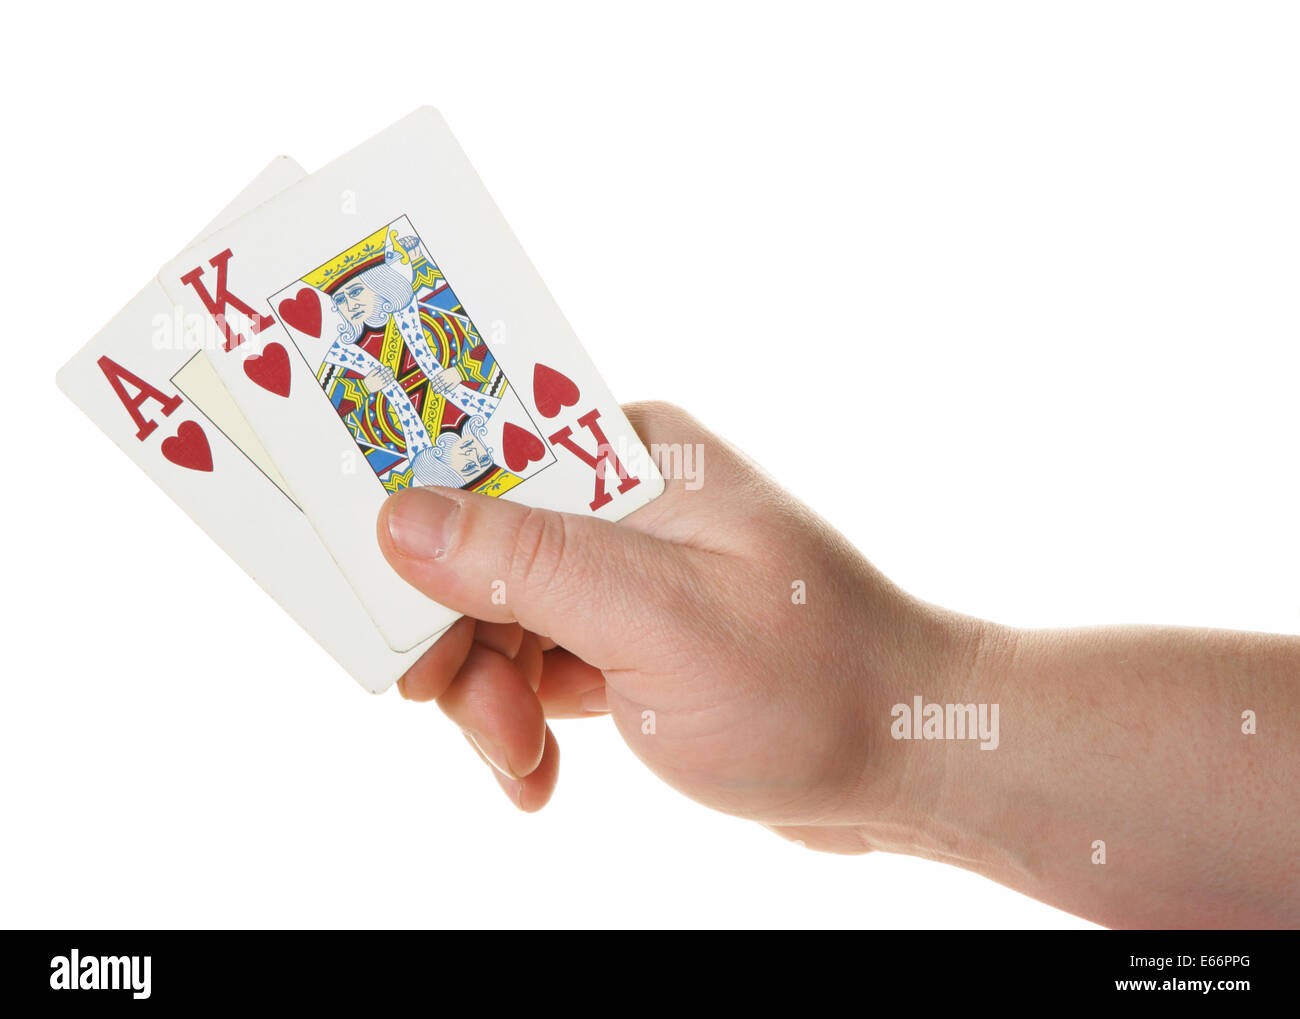 Ace-king - haut la main de départ au Texas hold'em poker Banque D'Images